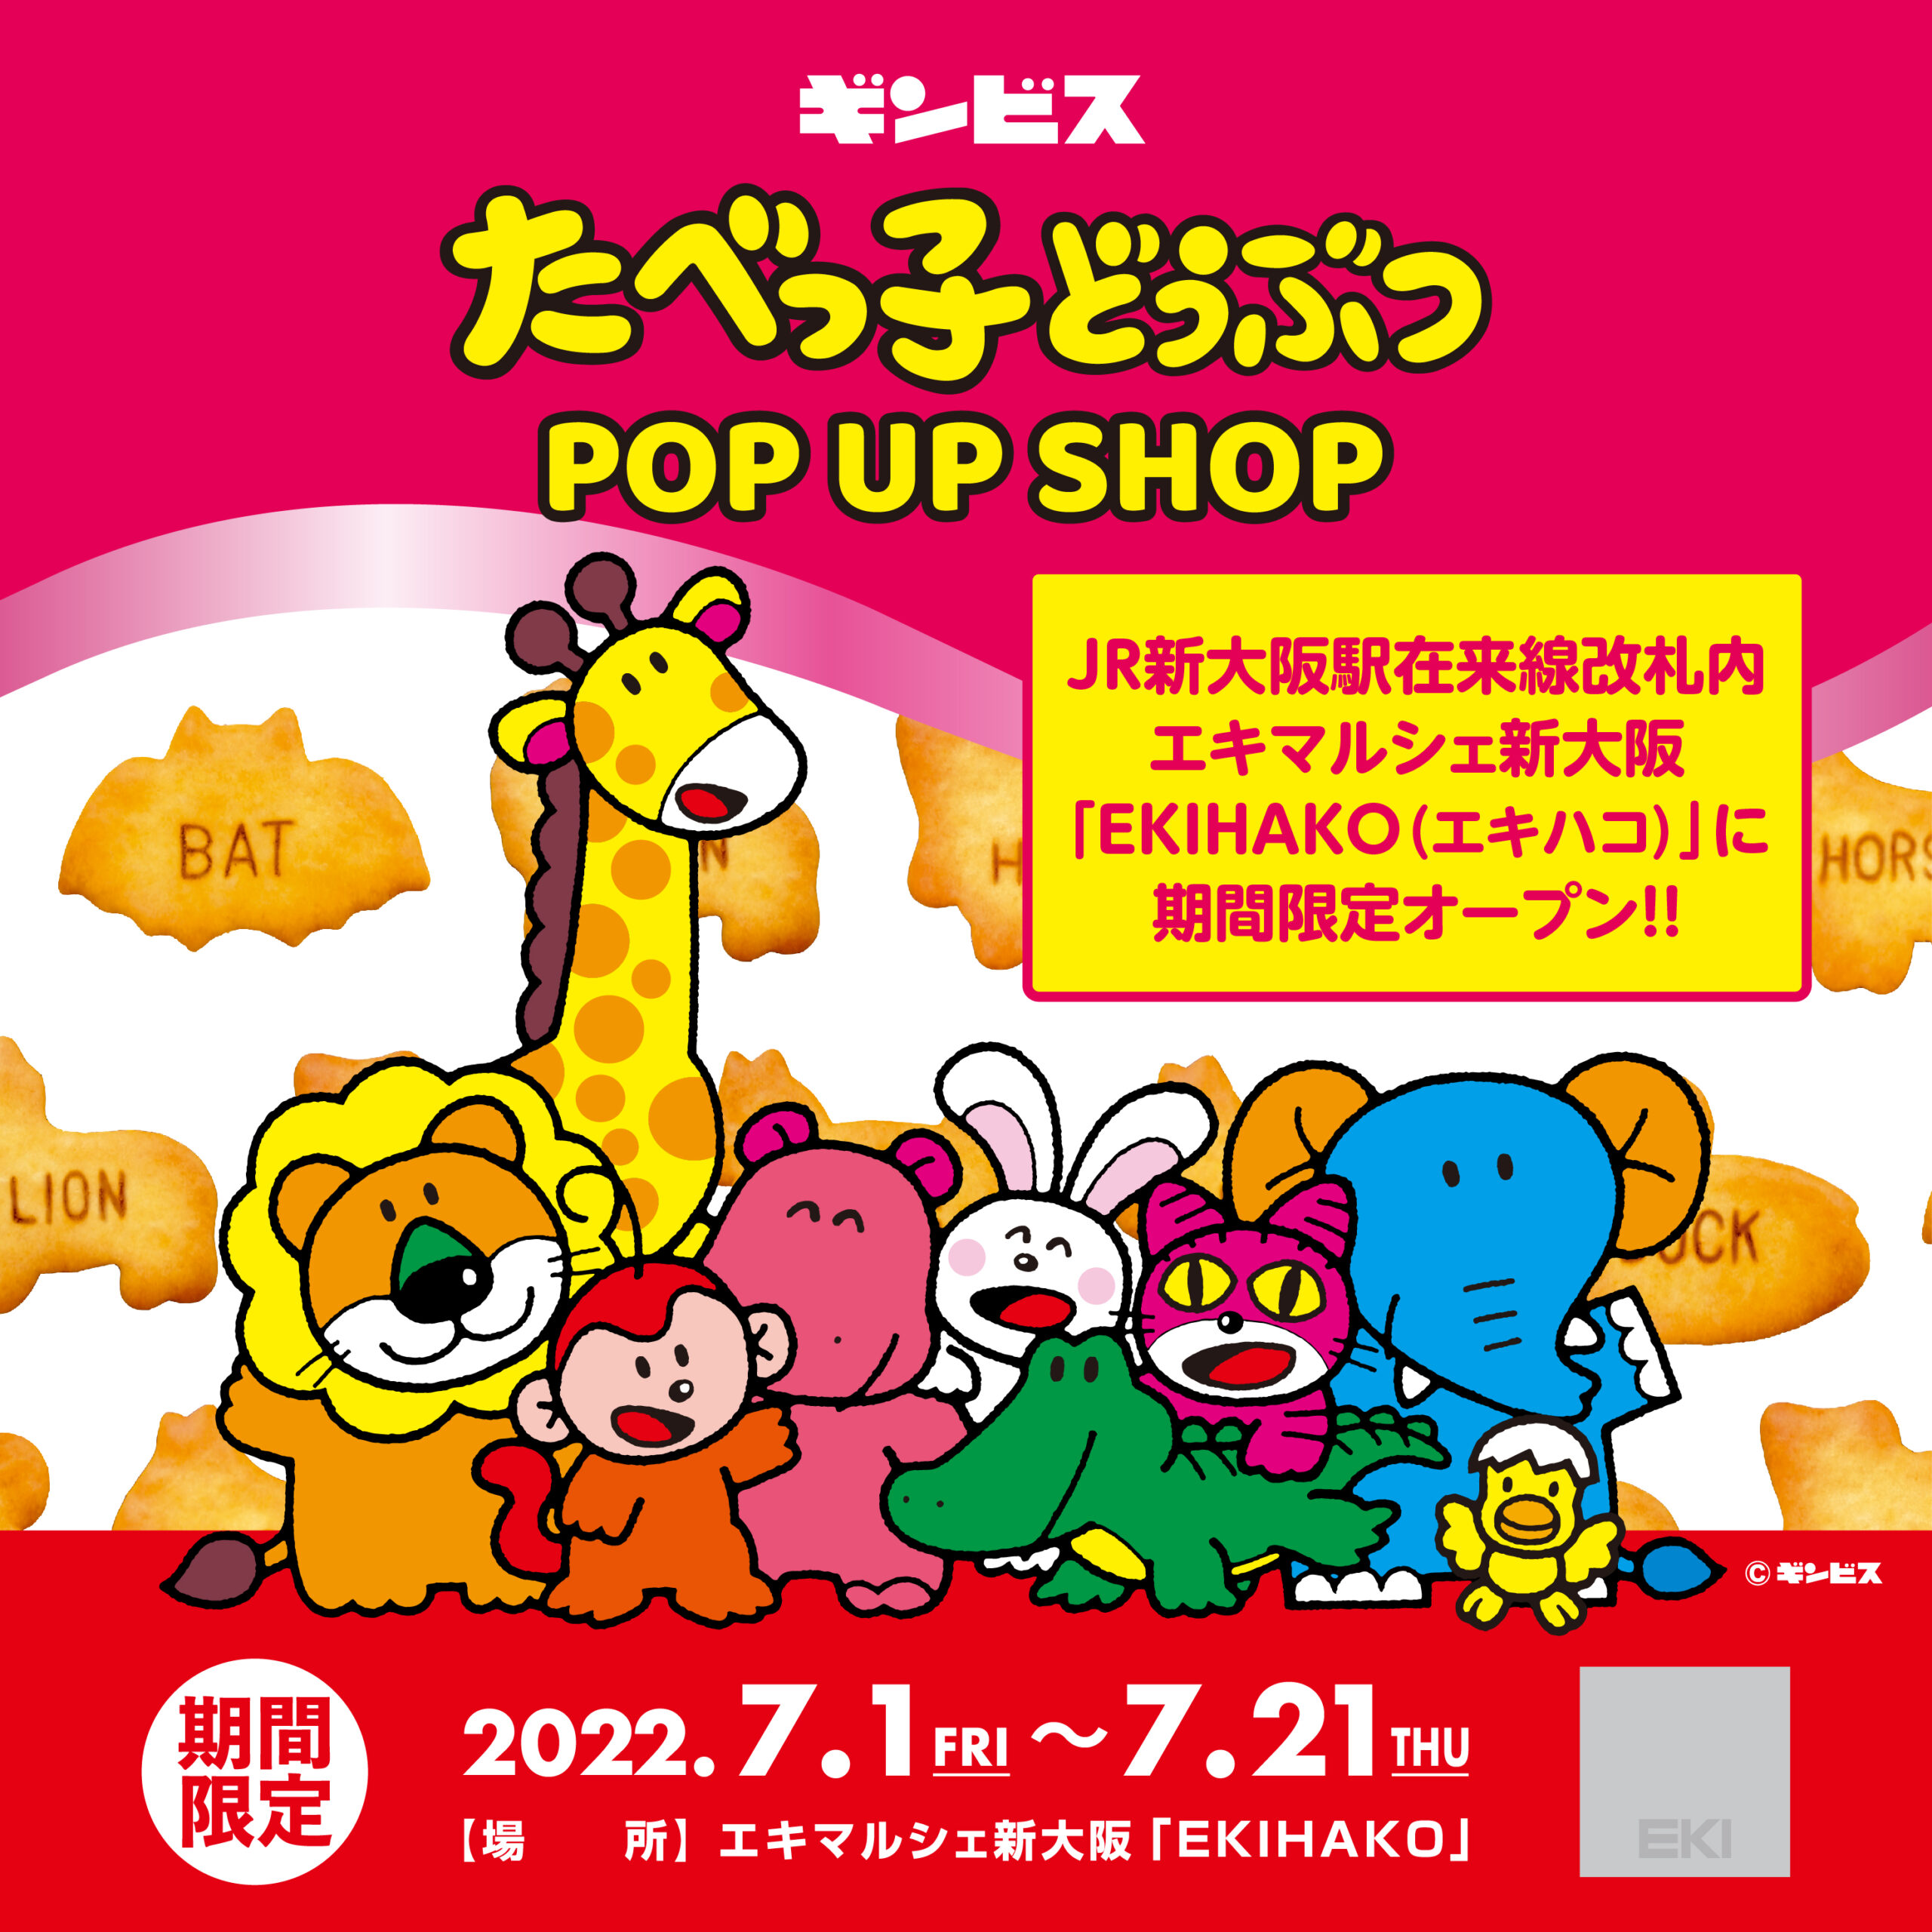 エキマルシェ新大阪 Ekihako に たべっ子どうぶつ Pop Up Shop が7月1日 金 より期間限定open 株式会社ヘソプロダクション